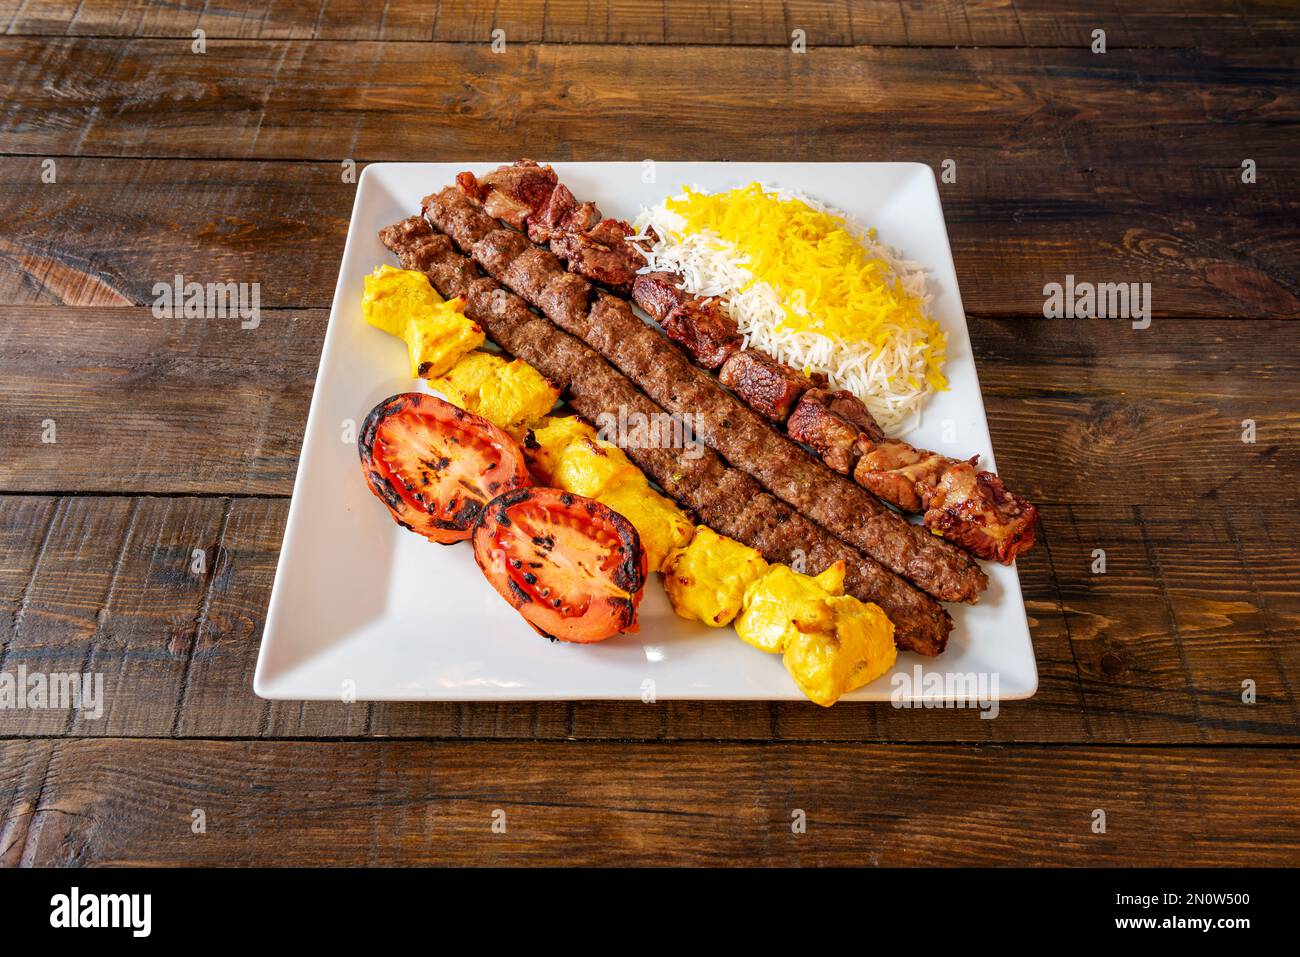 Un piatto con spiedini cucinati in stile mediorientale con diversi tipi di carne accompagnati da pomodori arrostiti e riso con salsa Foto Stock